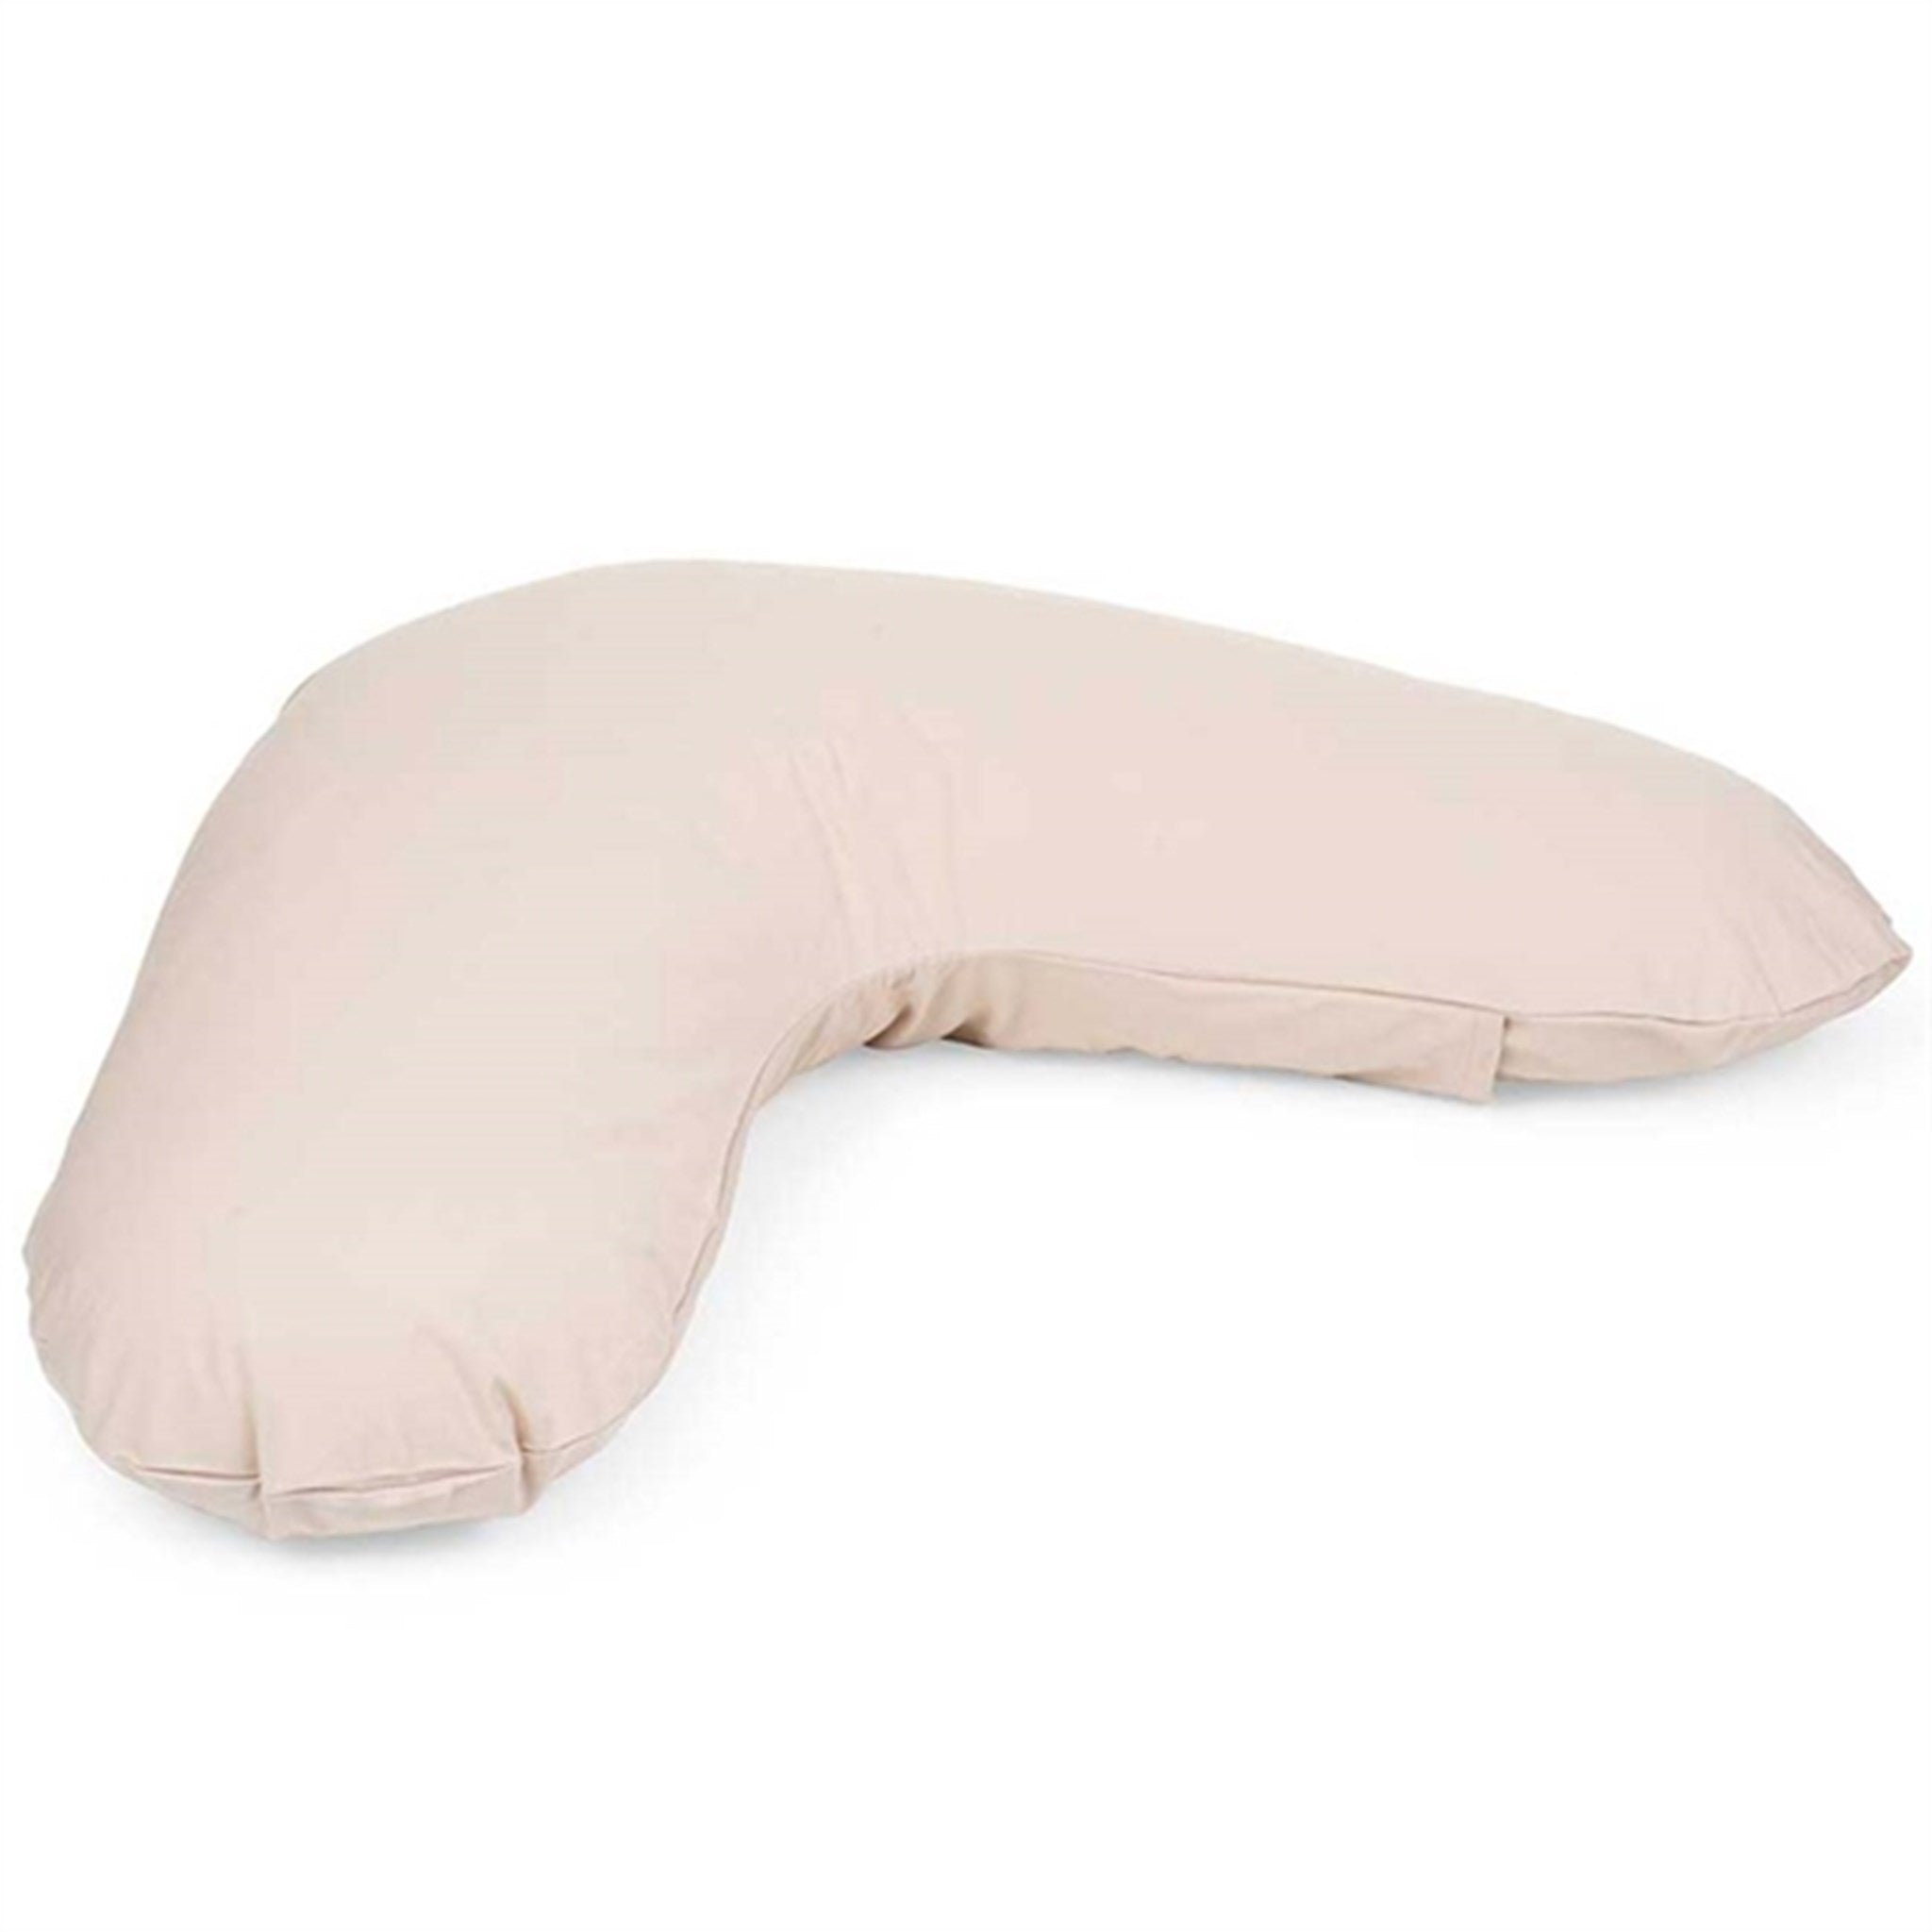 MarMar Nursery Pillow Cover Grey Sand